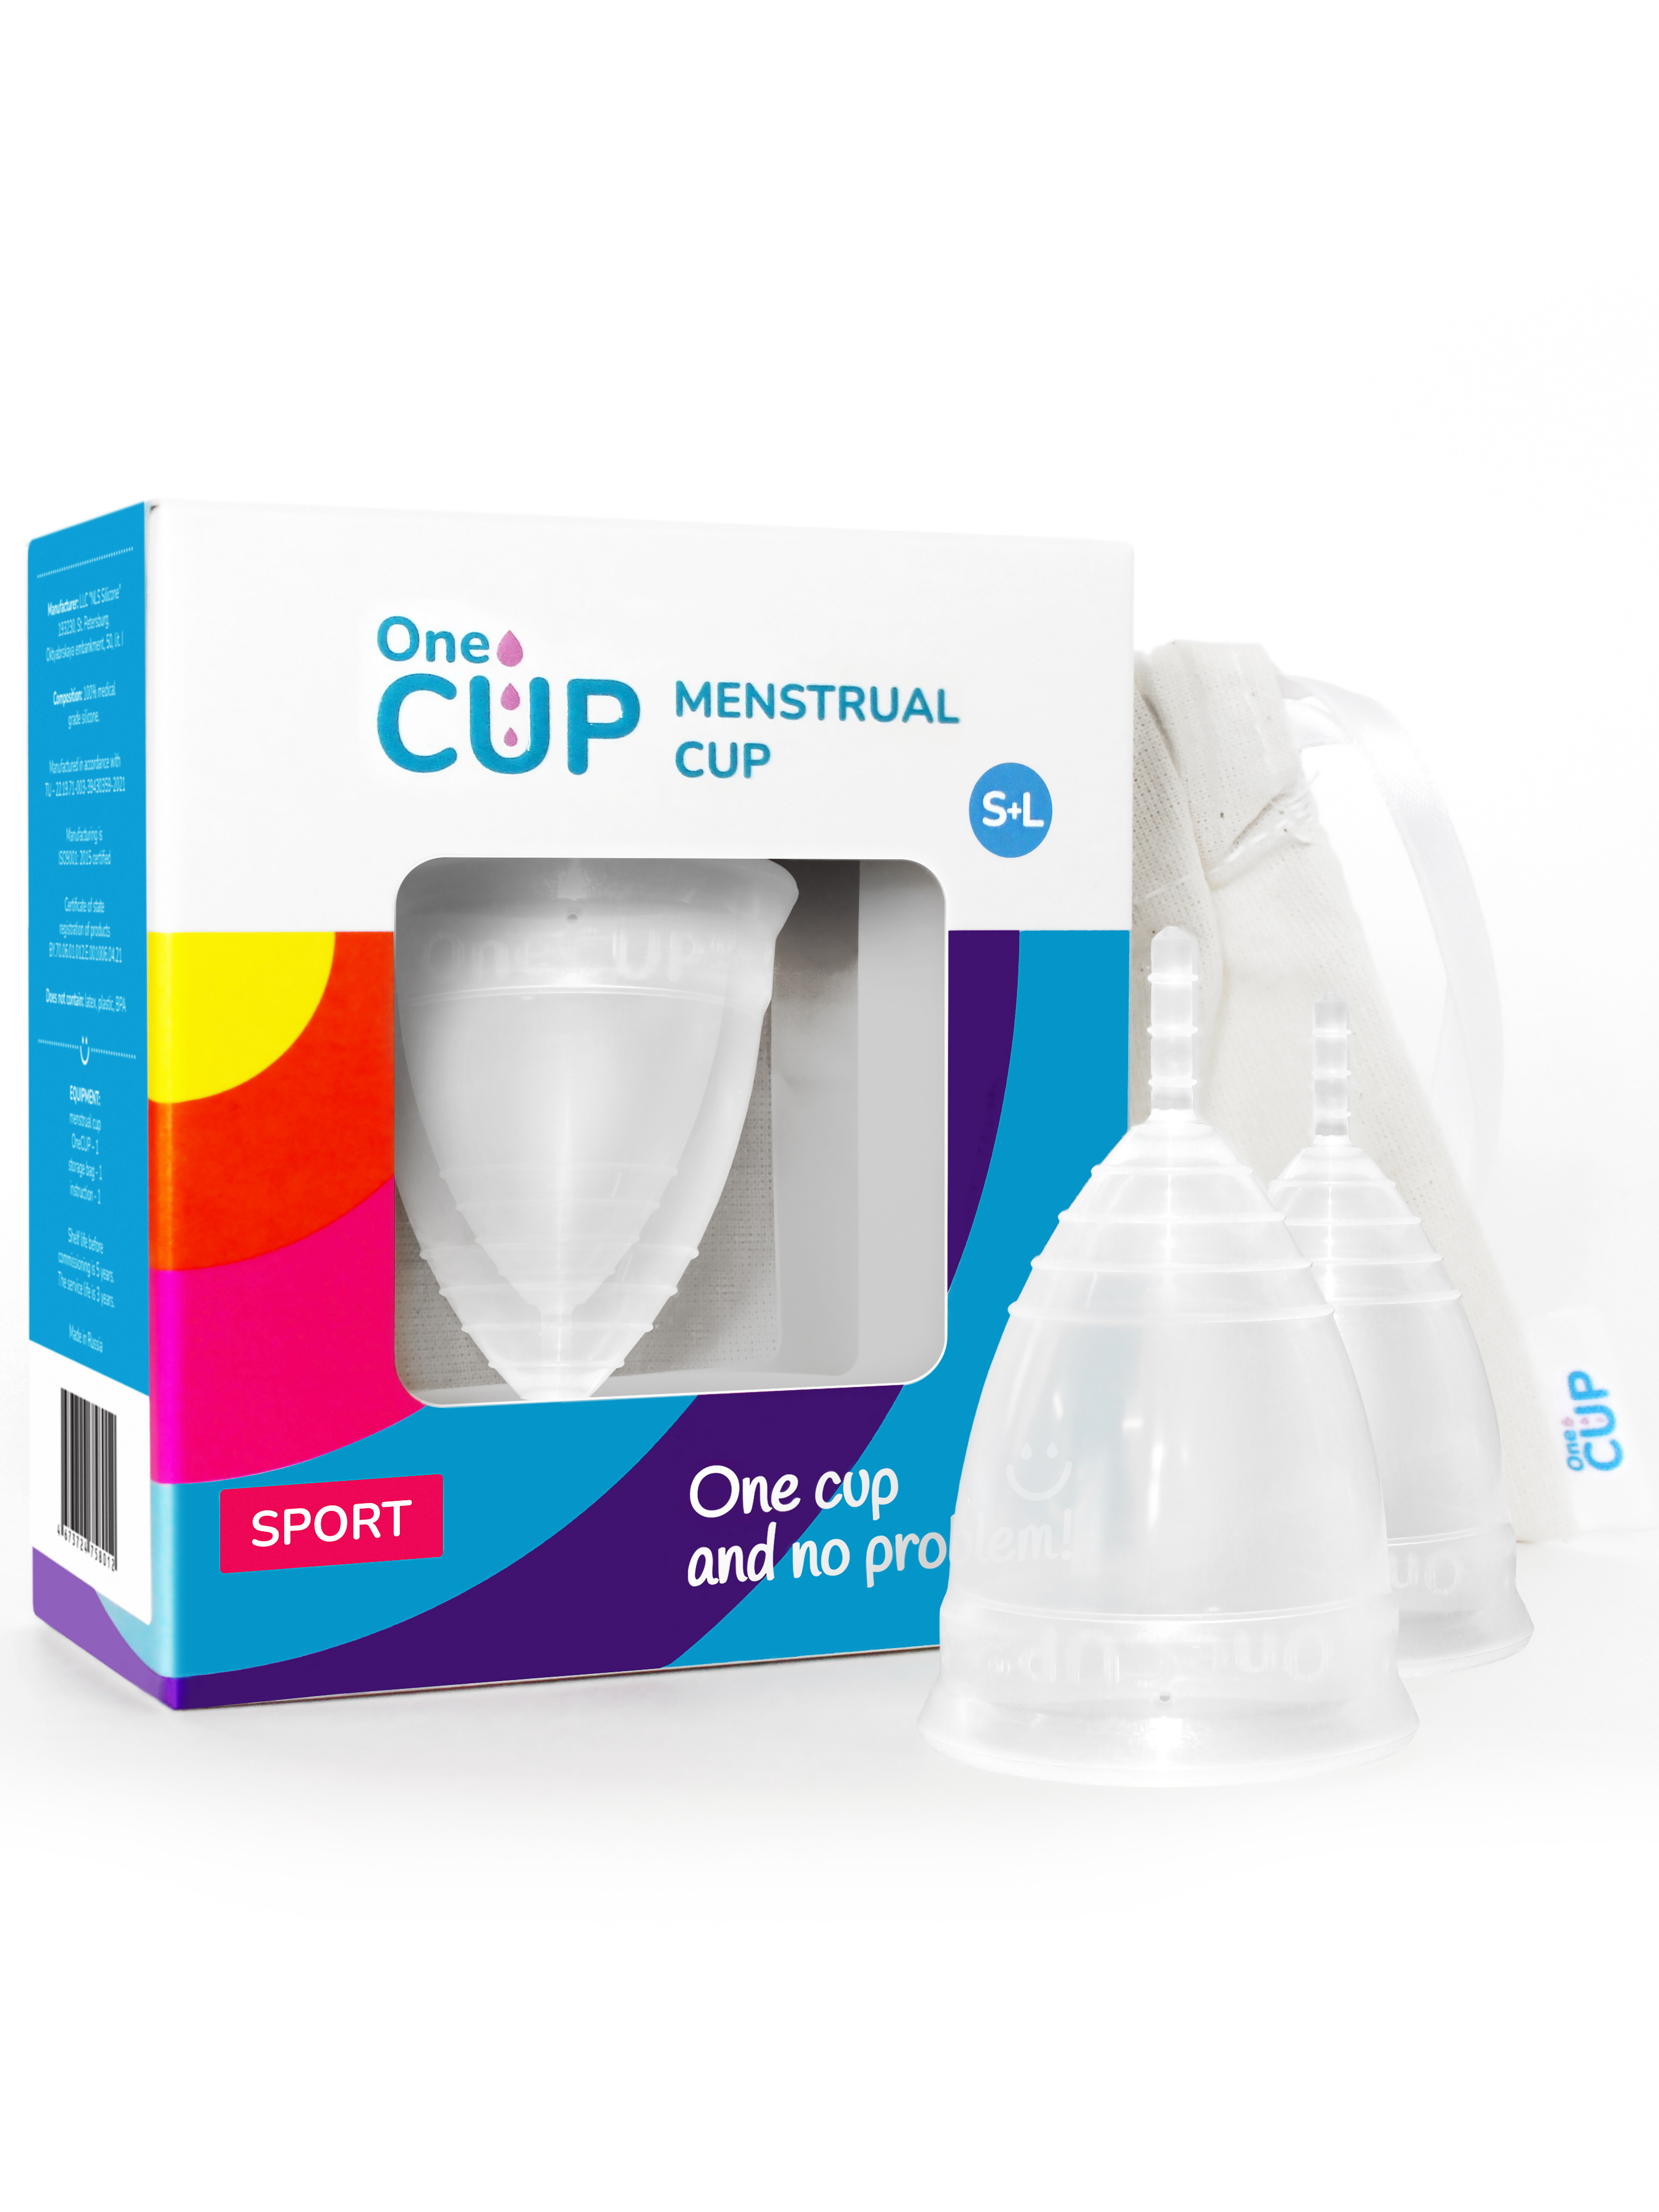 Набор менструальных чаш OneCUP SPORT прозрачный размеры S и L